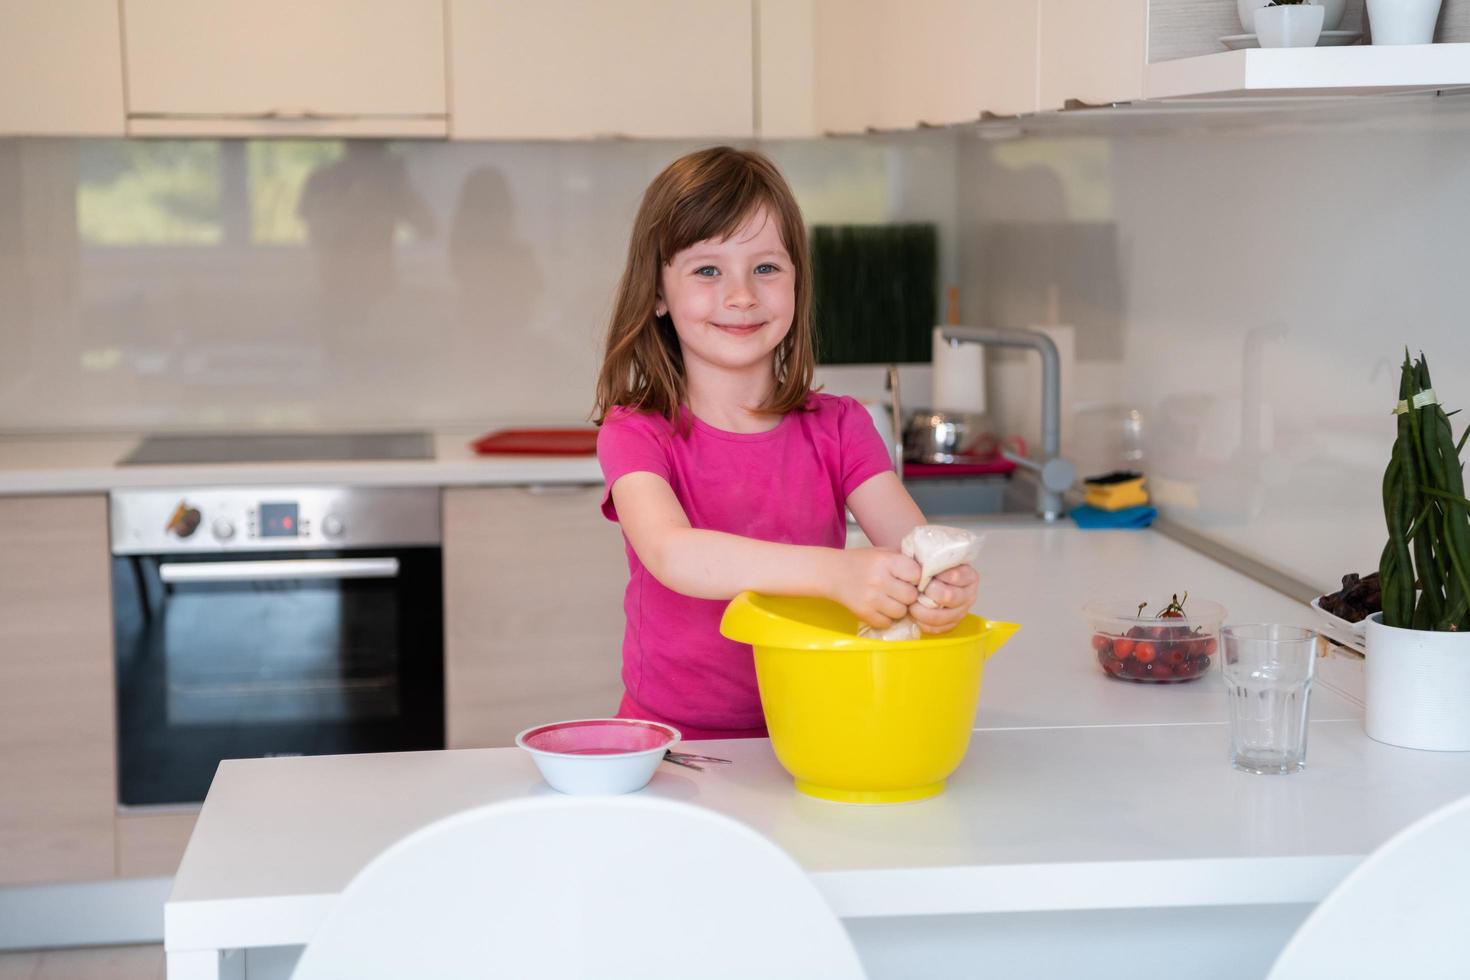 la niña prepara masa en una batidora sumergible y se lame los dedos. los electrodomésticos modernos son convenientes y simples incluso para los niños. un pasatiempo de cocinar. enfoque selectivo foto